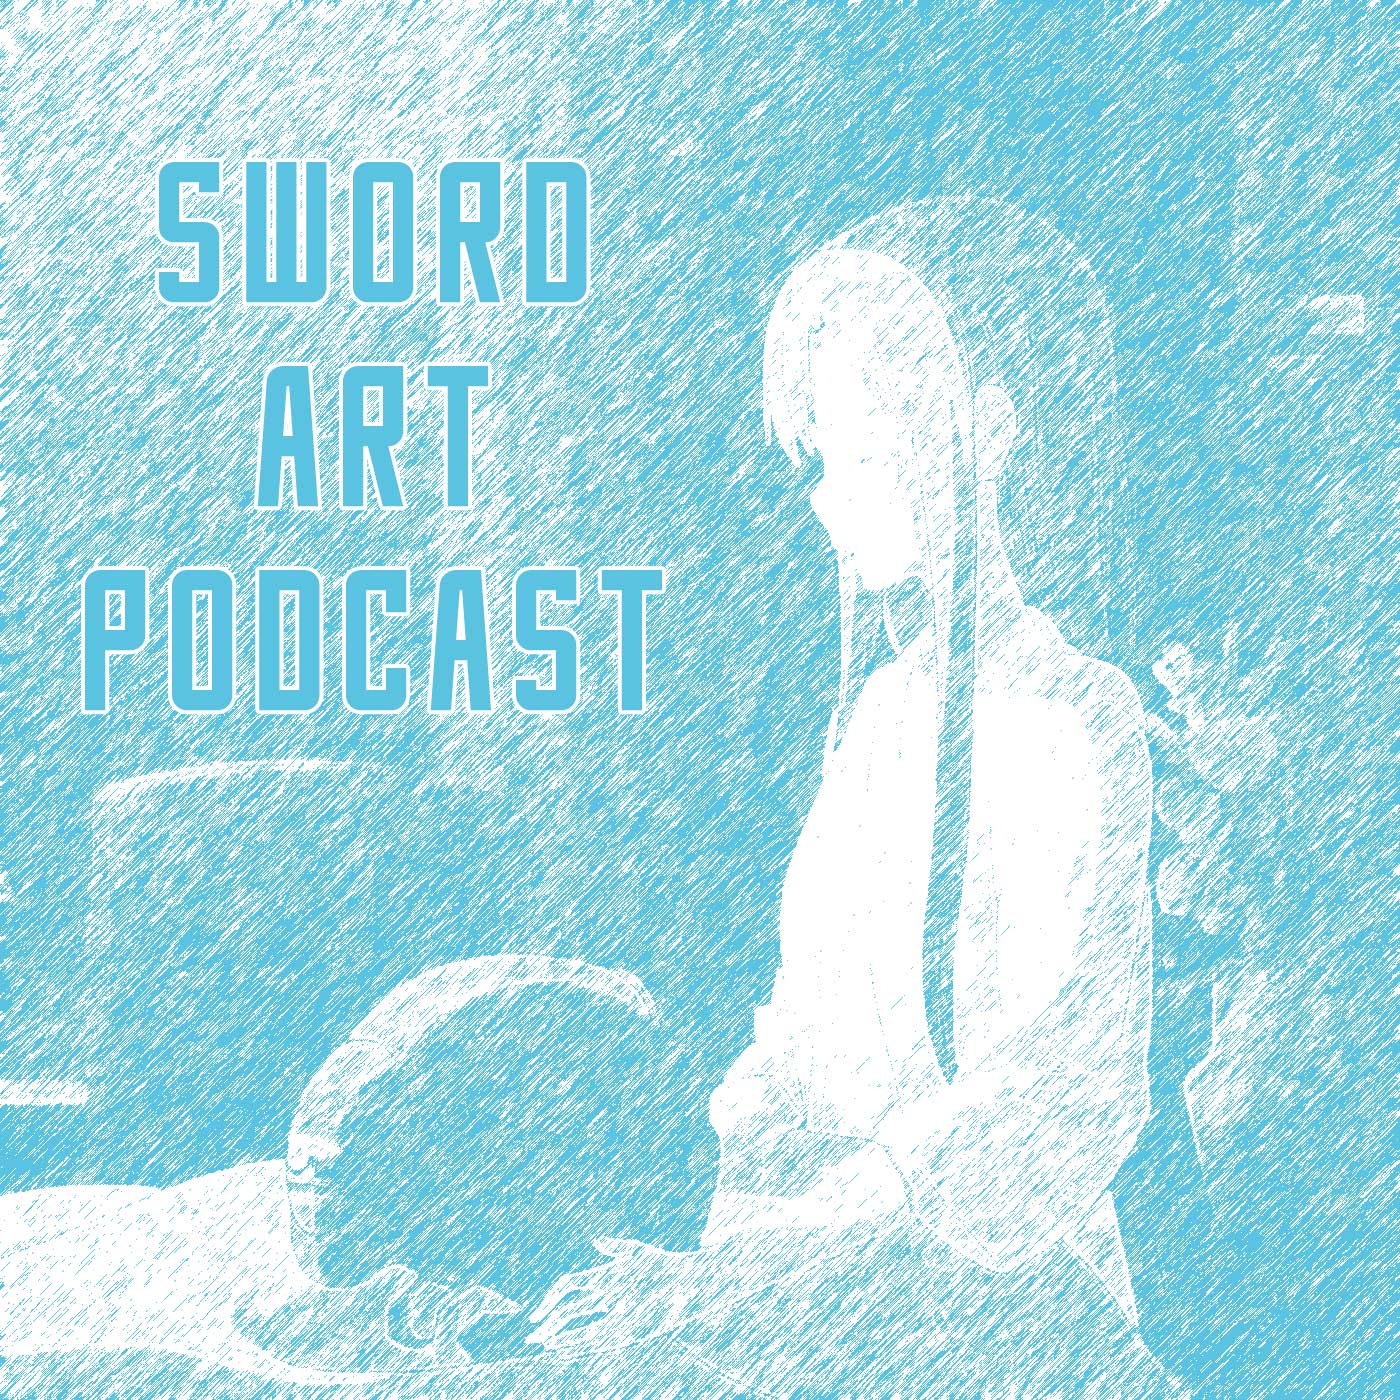 Sword Art Podcast - Season 3 - Epsiode 2